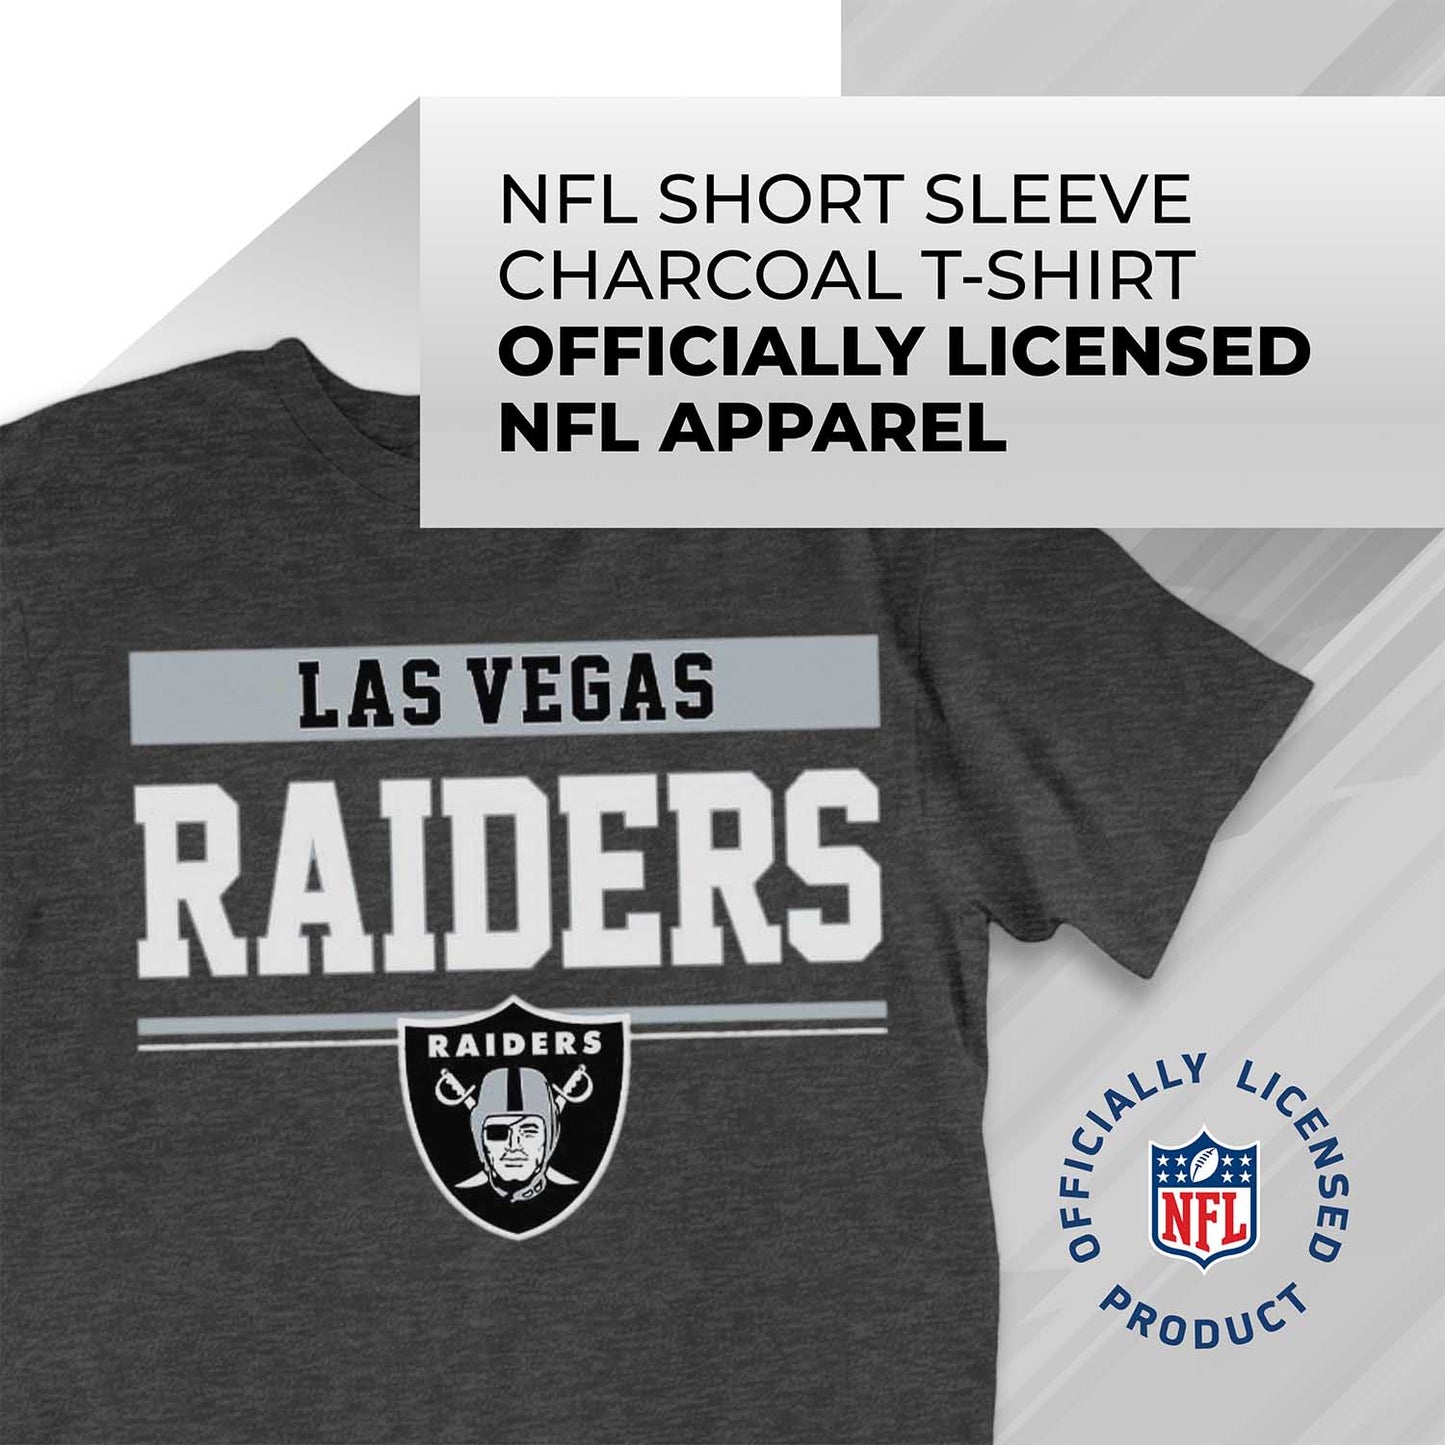 Las Vegas Raiders NFL Adult Team Block Tagless T-Shirt - Charcoal